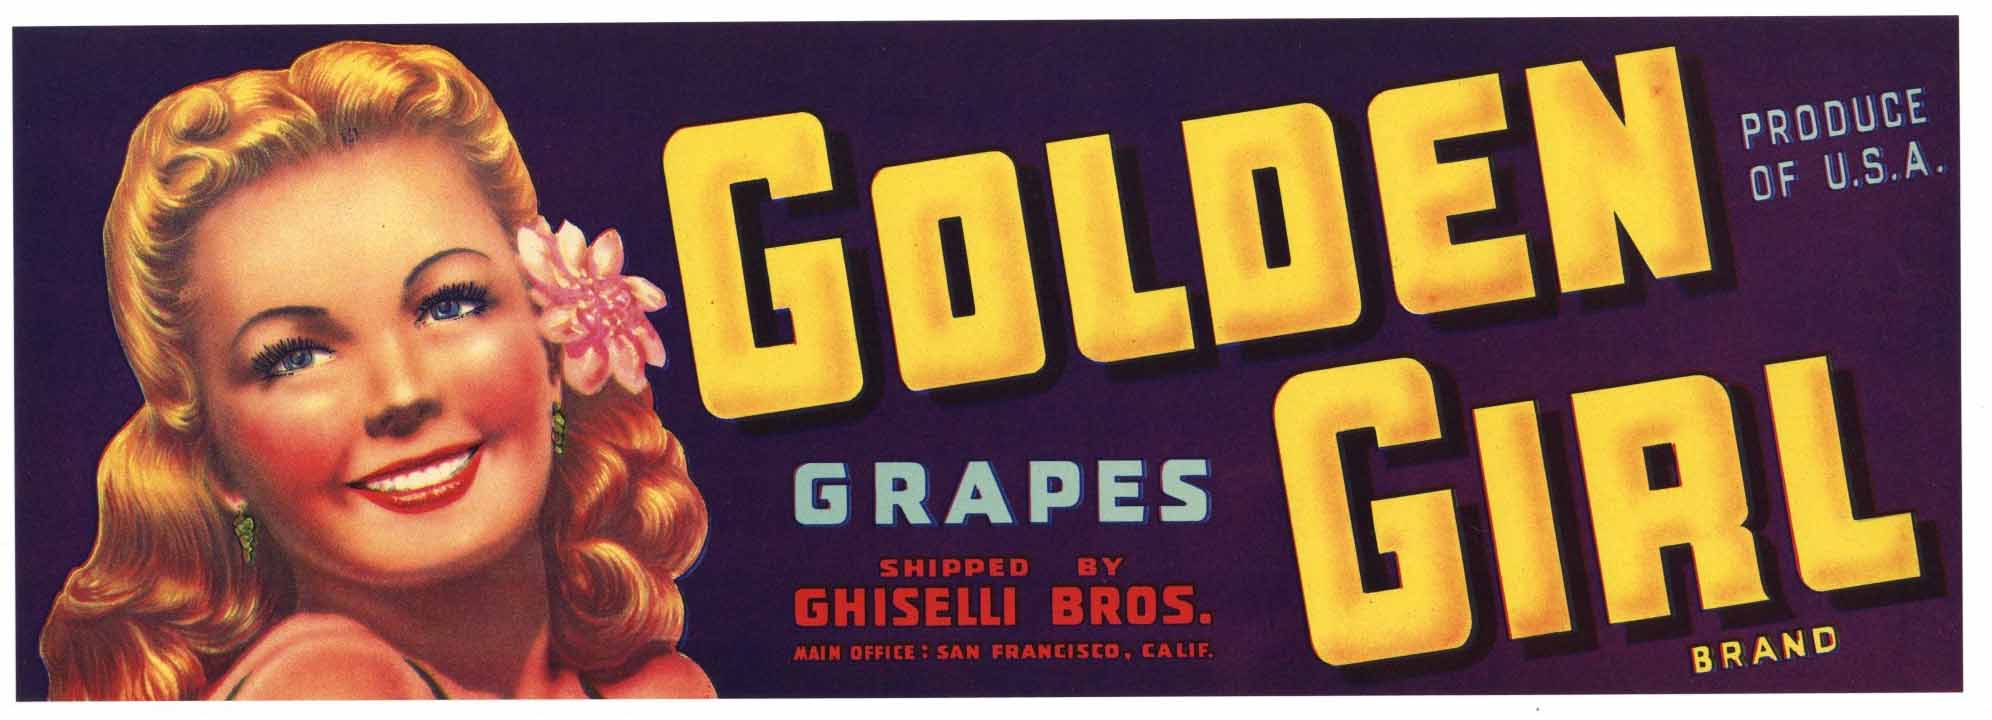 Golden Girl Brand Vintage Grape Crate Label